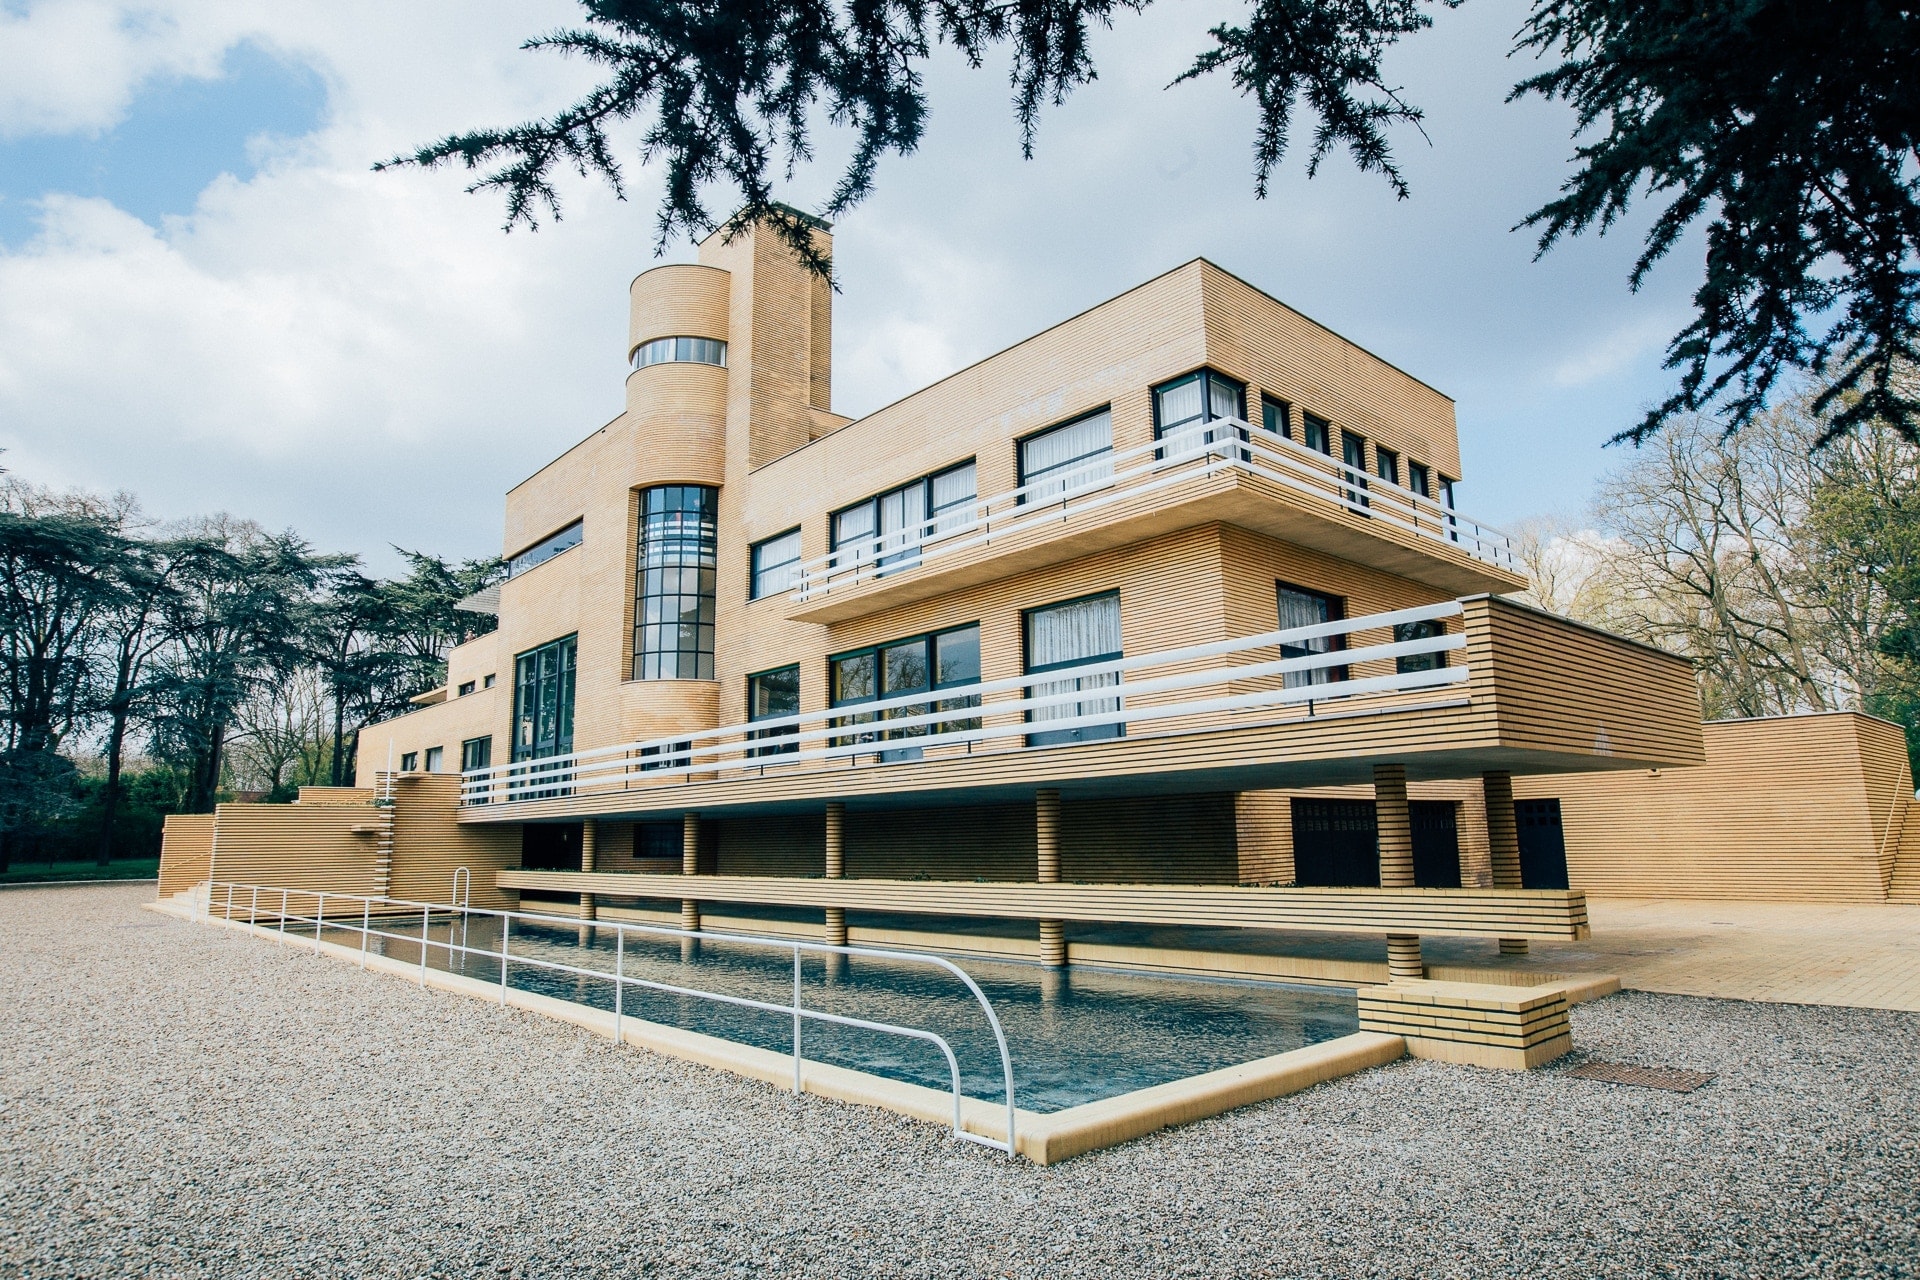 Visiter la Villa Cavrois, chef d’œuvre de l’architecture moderne